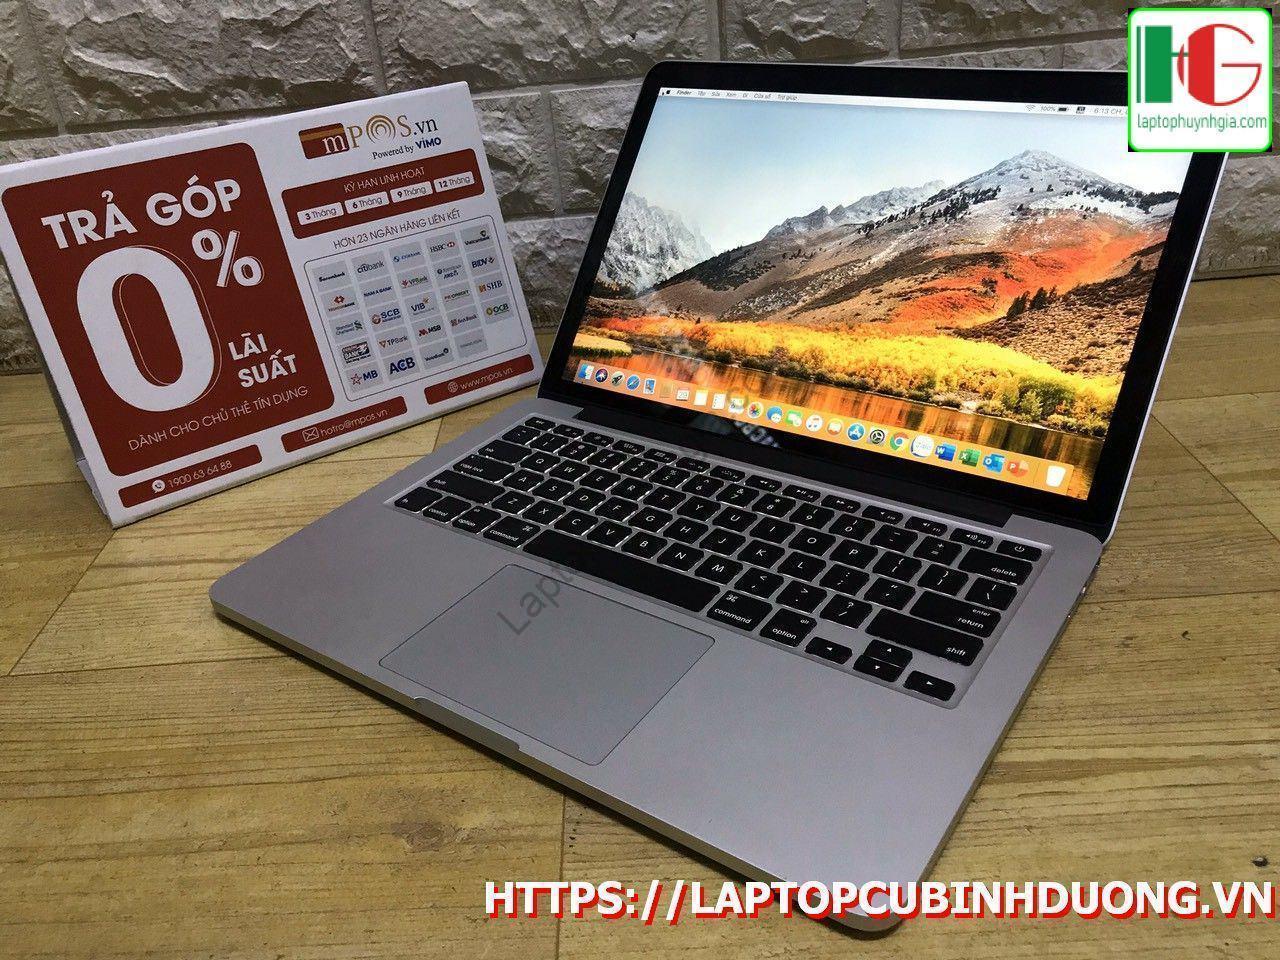 Laptop Macbook Pro 20150i55 Ram8g Ssd 128g Laptopcubinhduong.vn 4 Copy [kích Thước Gốc] Result